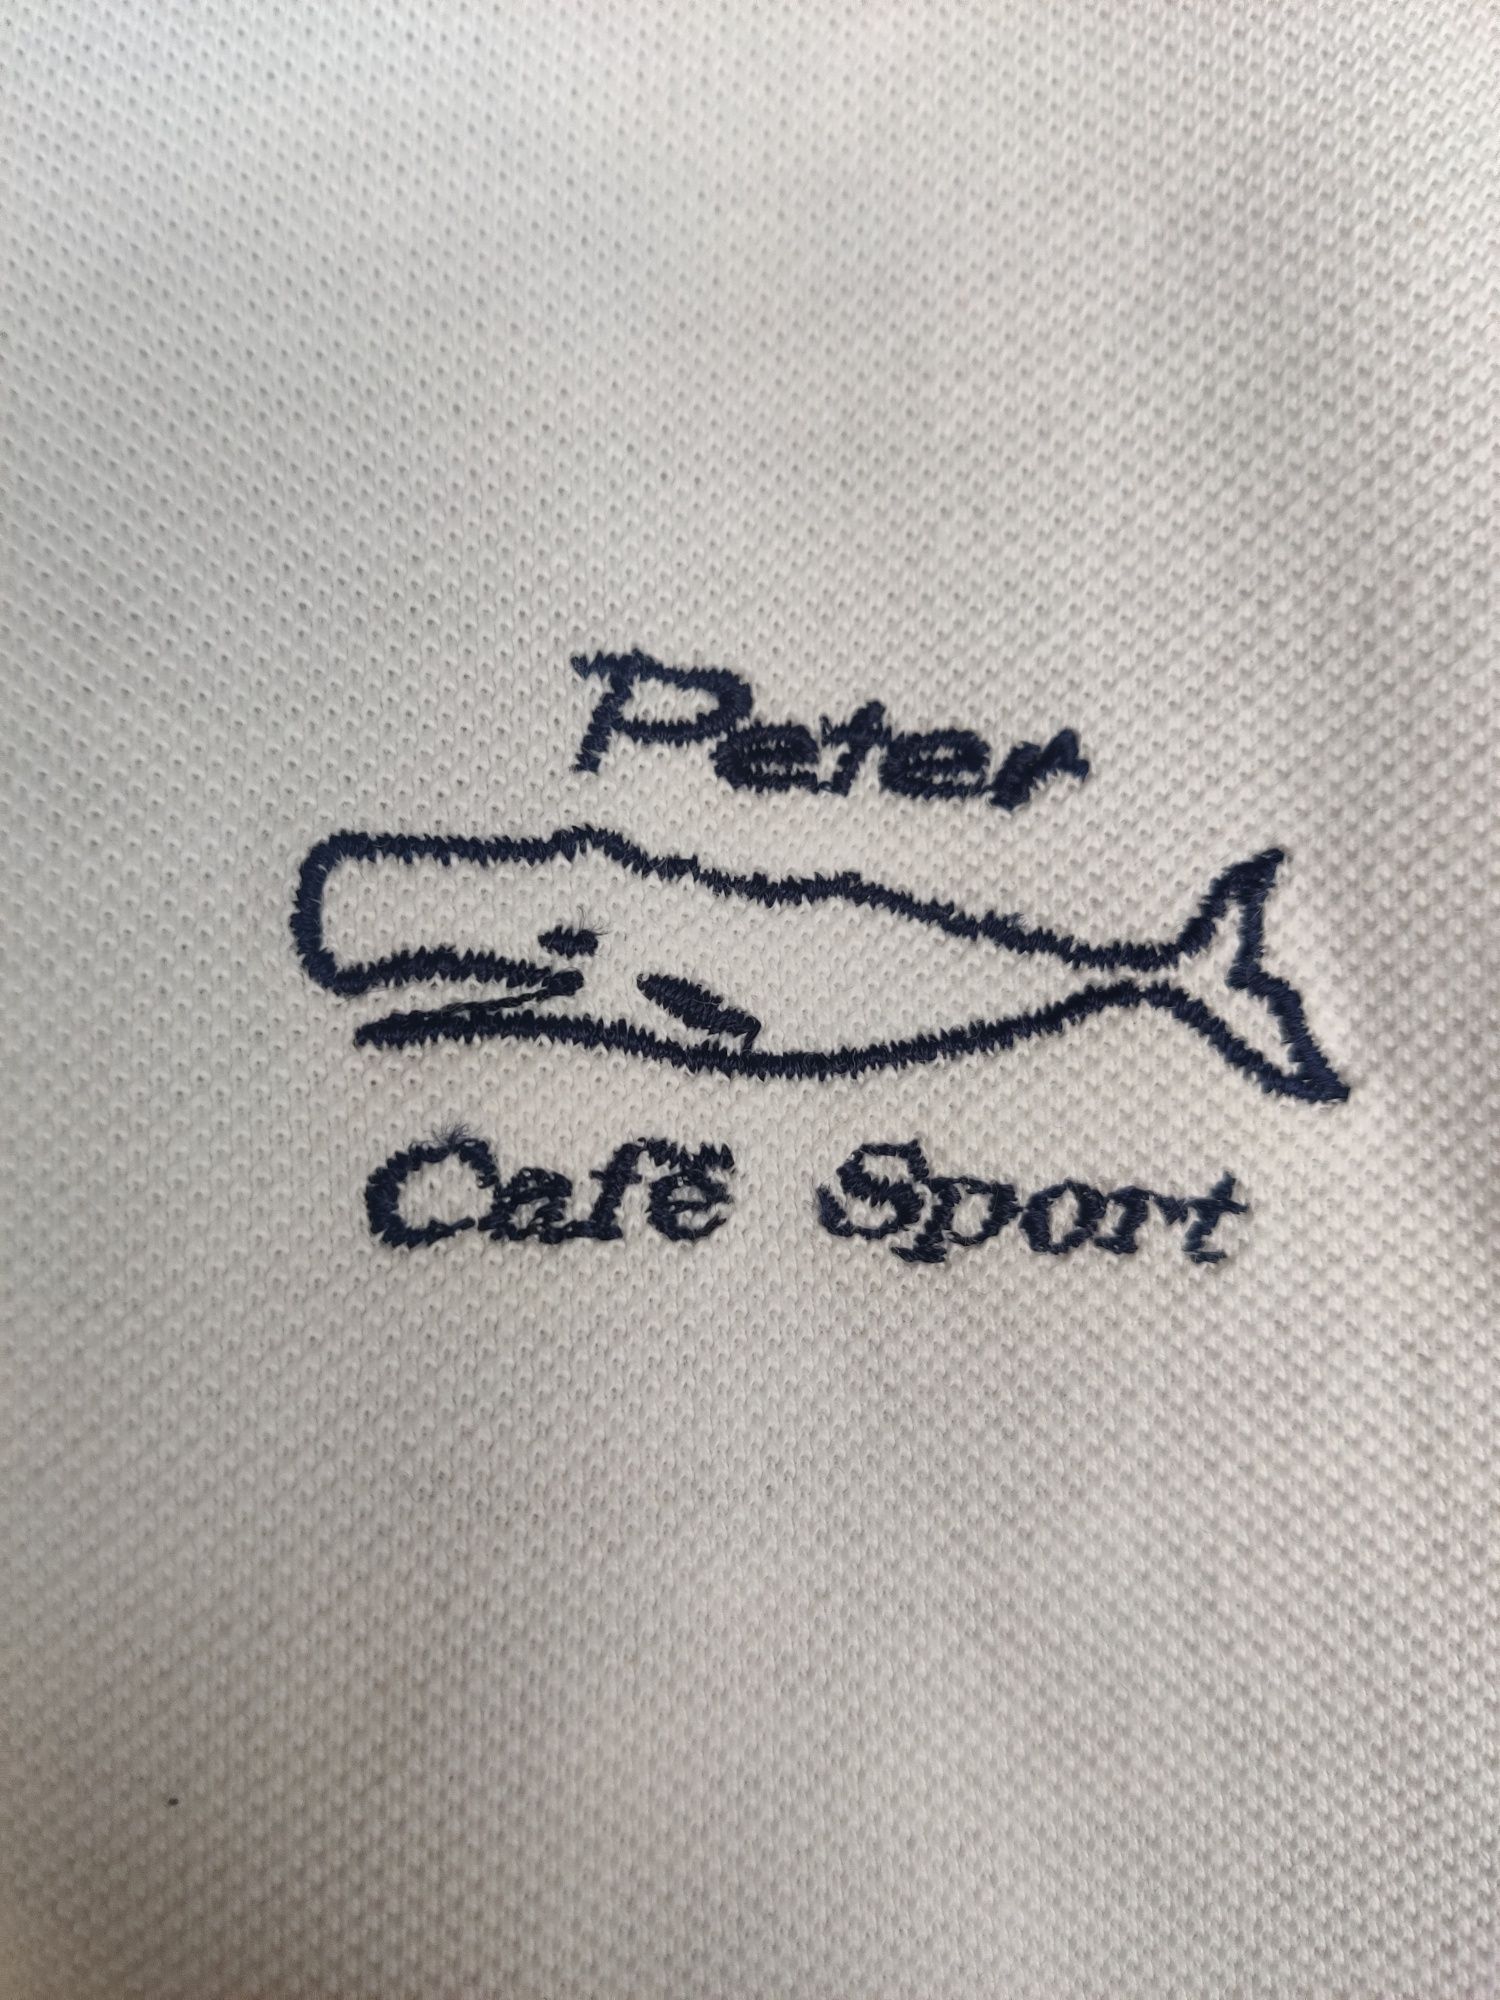 T-shirt pólo Peter - Café Sport Açores